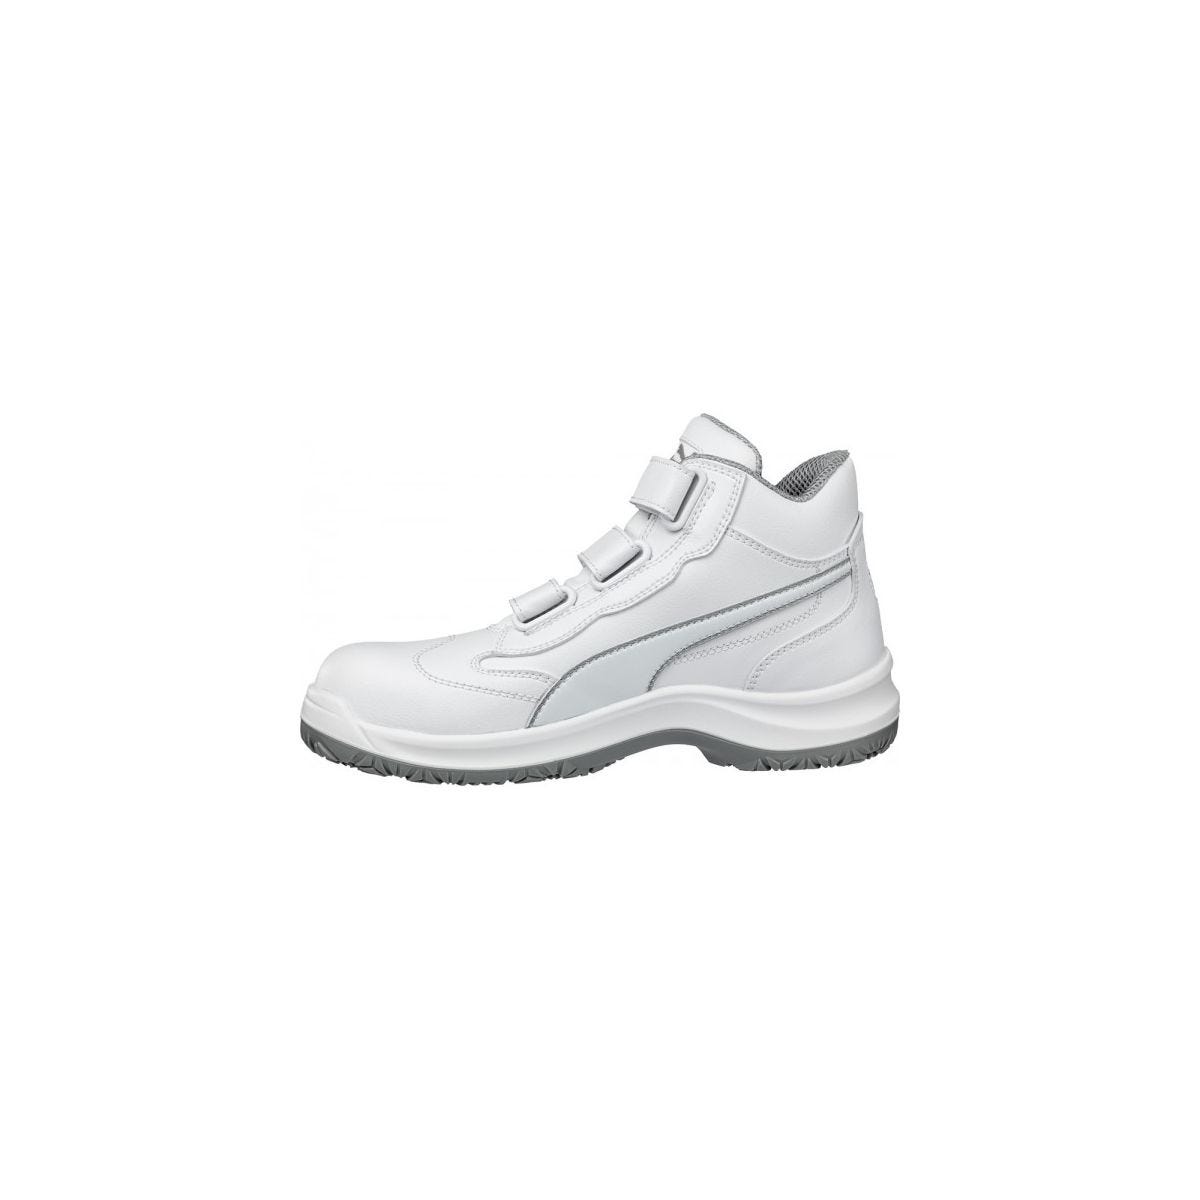 Chaussures de sécurité Absolute Mid S2 Blanc - Puma - Taille 47 4